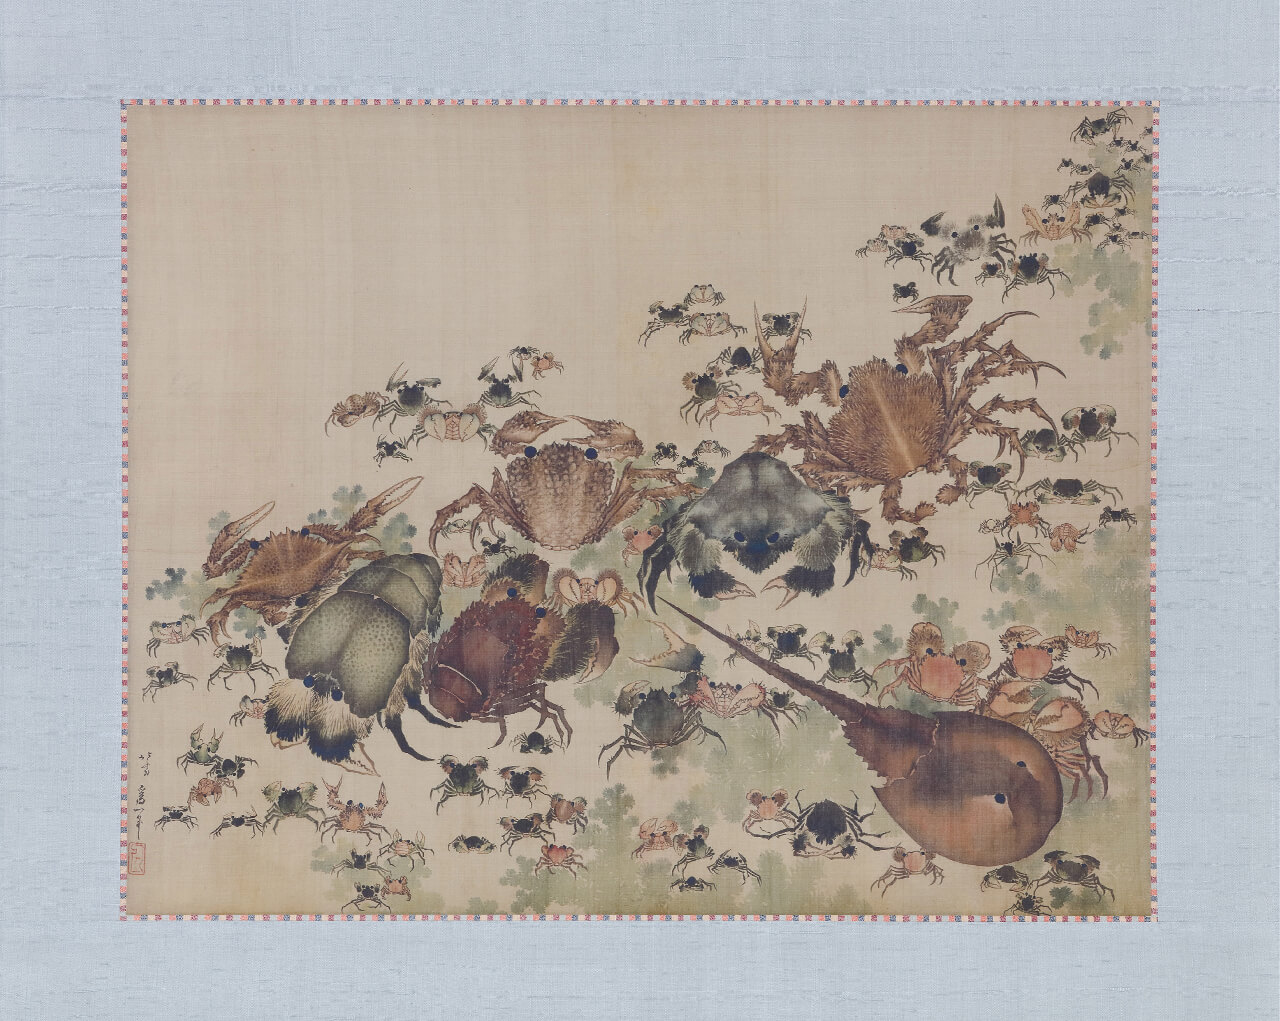 「Crustaceans」 Katsushika Hokusai